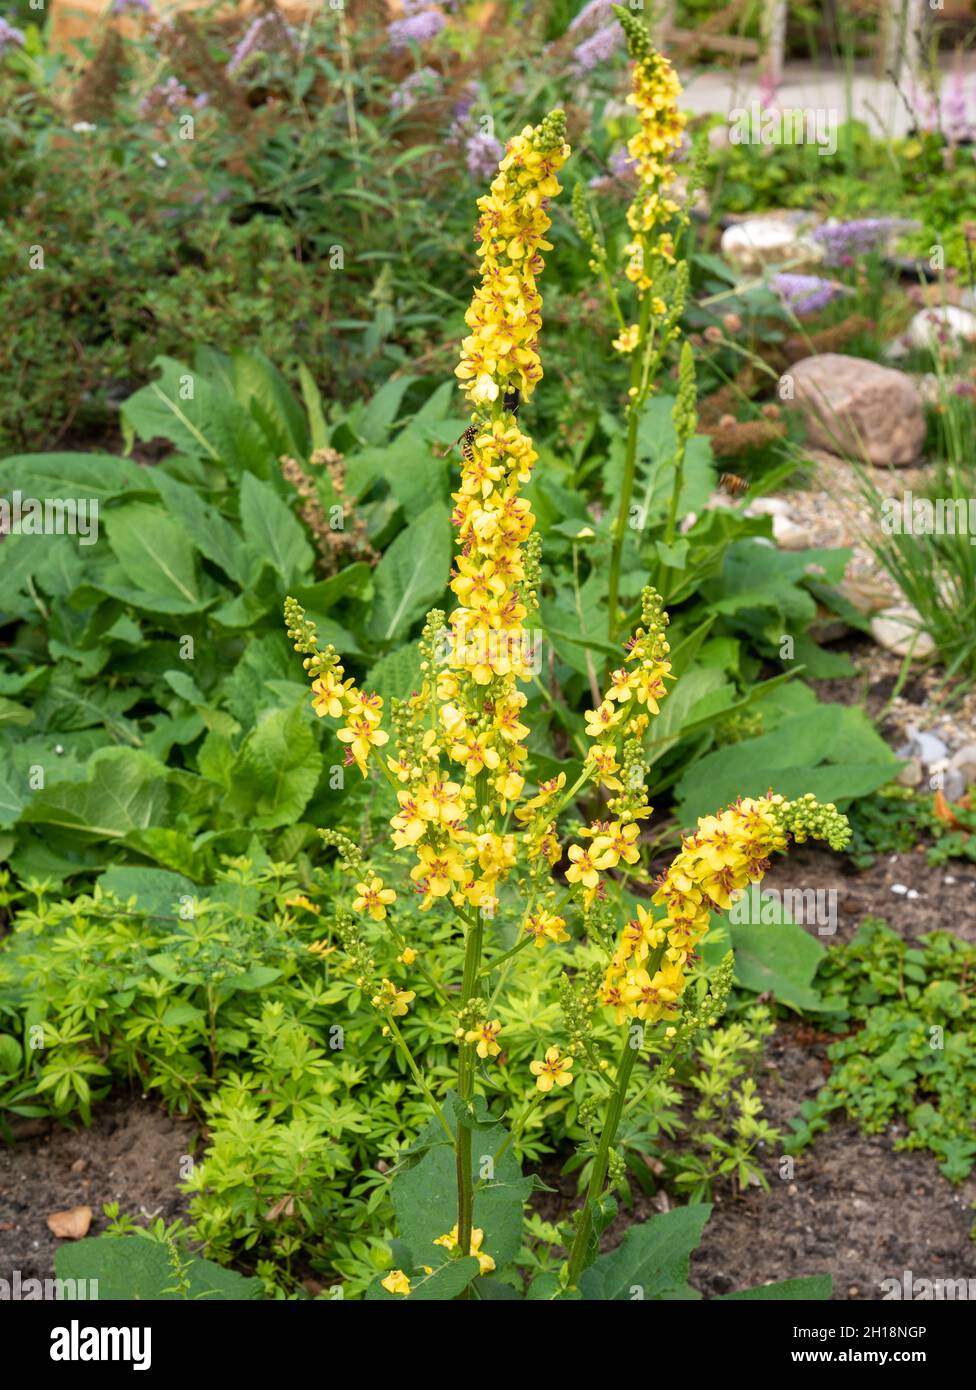 Schwarze Königskerze oder dunkle Königskerze, Verbascum nigrum, Wildpflanze mit gelben Blüten, die im Garten wächst, Niederlande Stockfoto